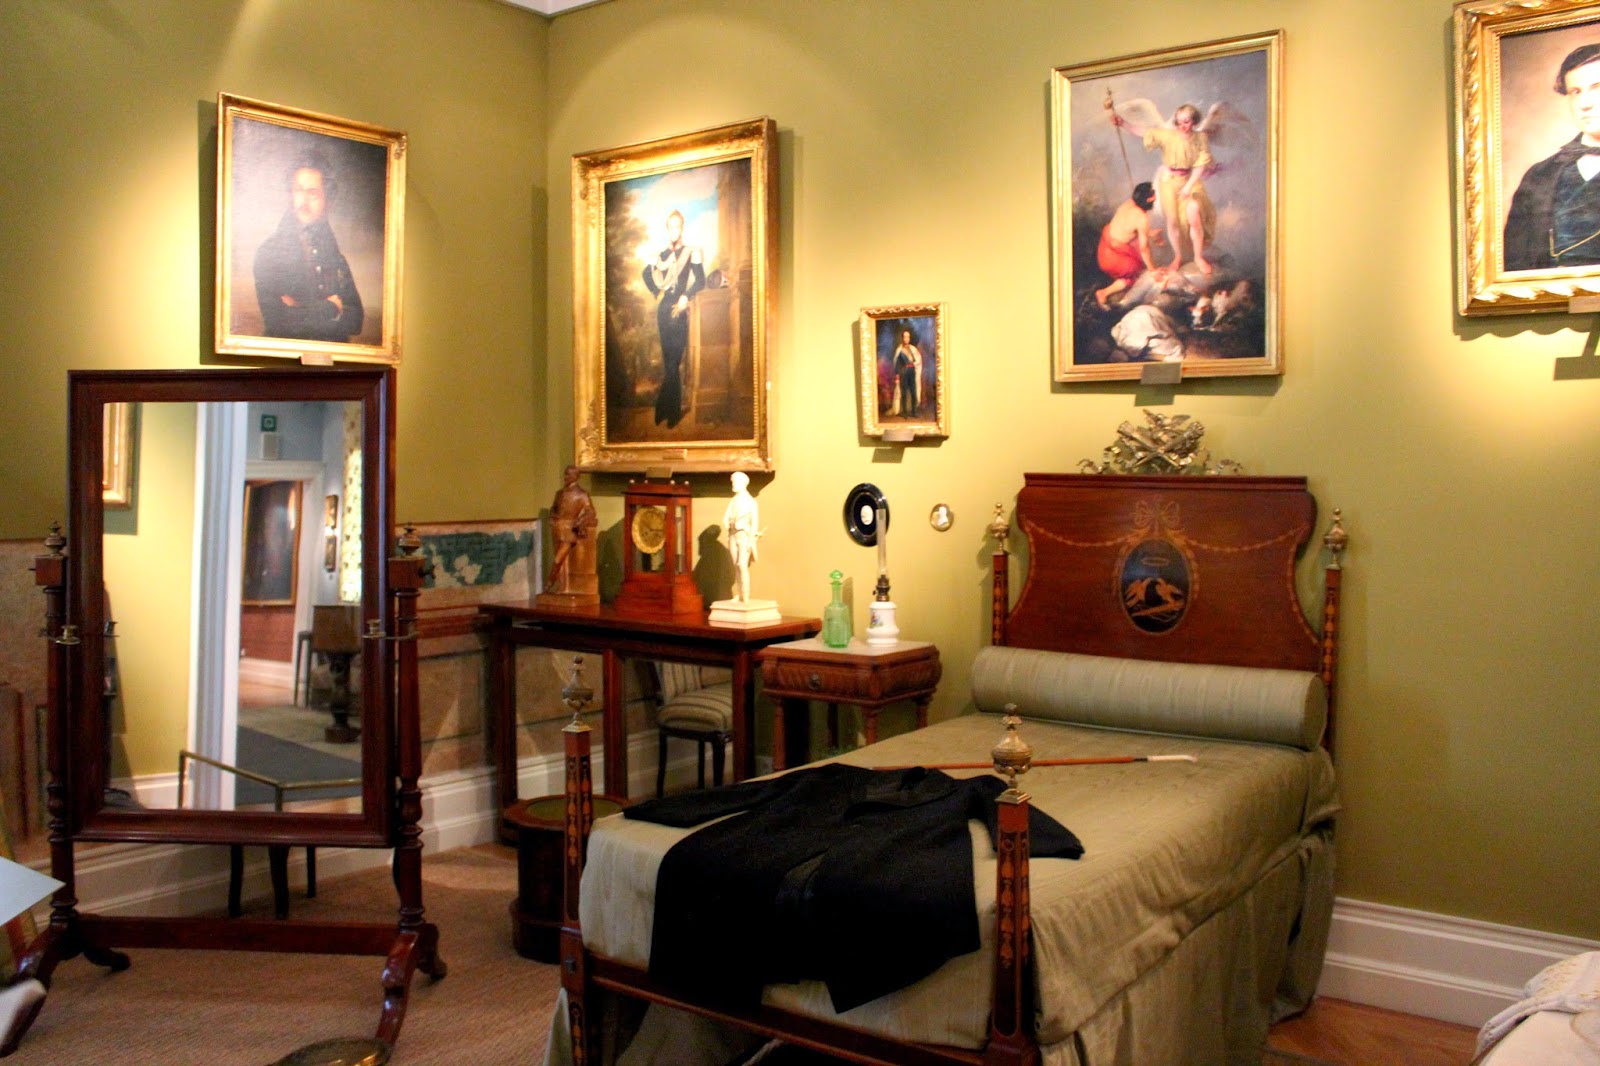 Salas del Museo del Romanticismo en Madrid